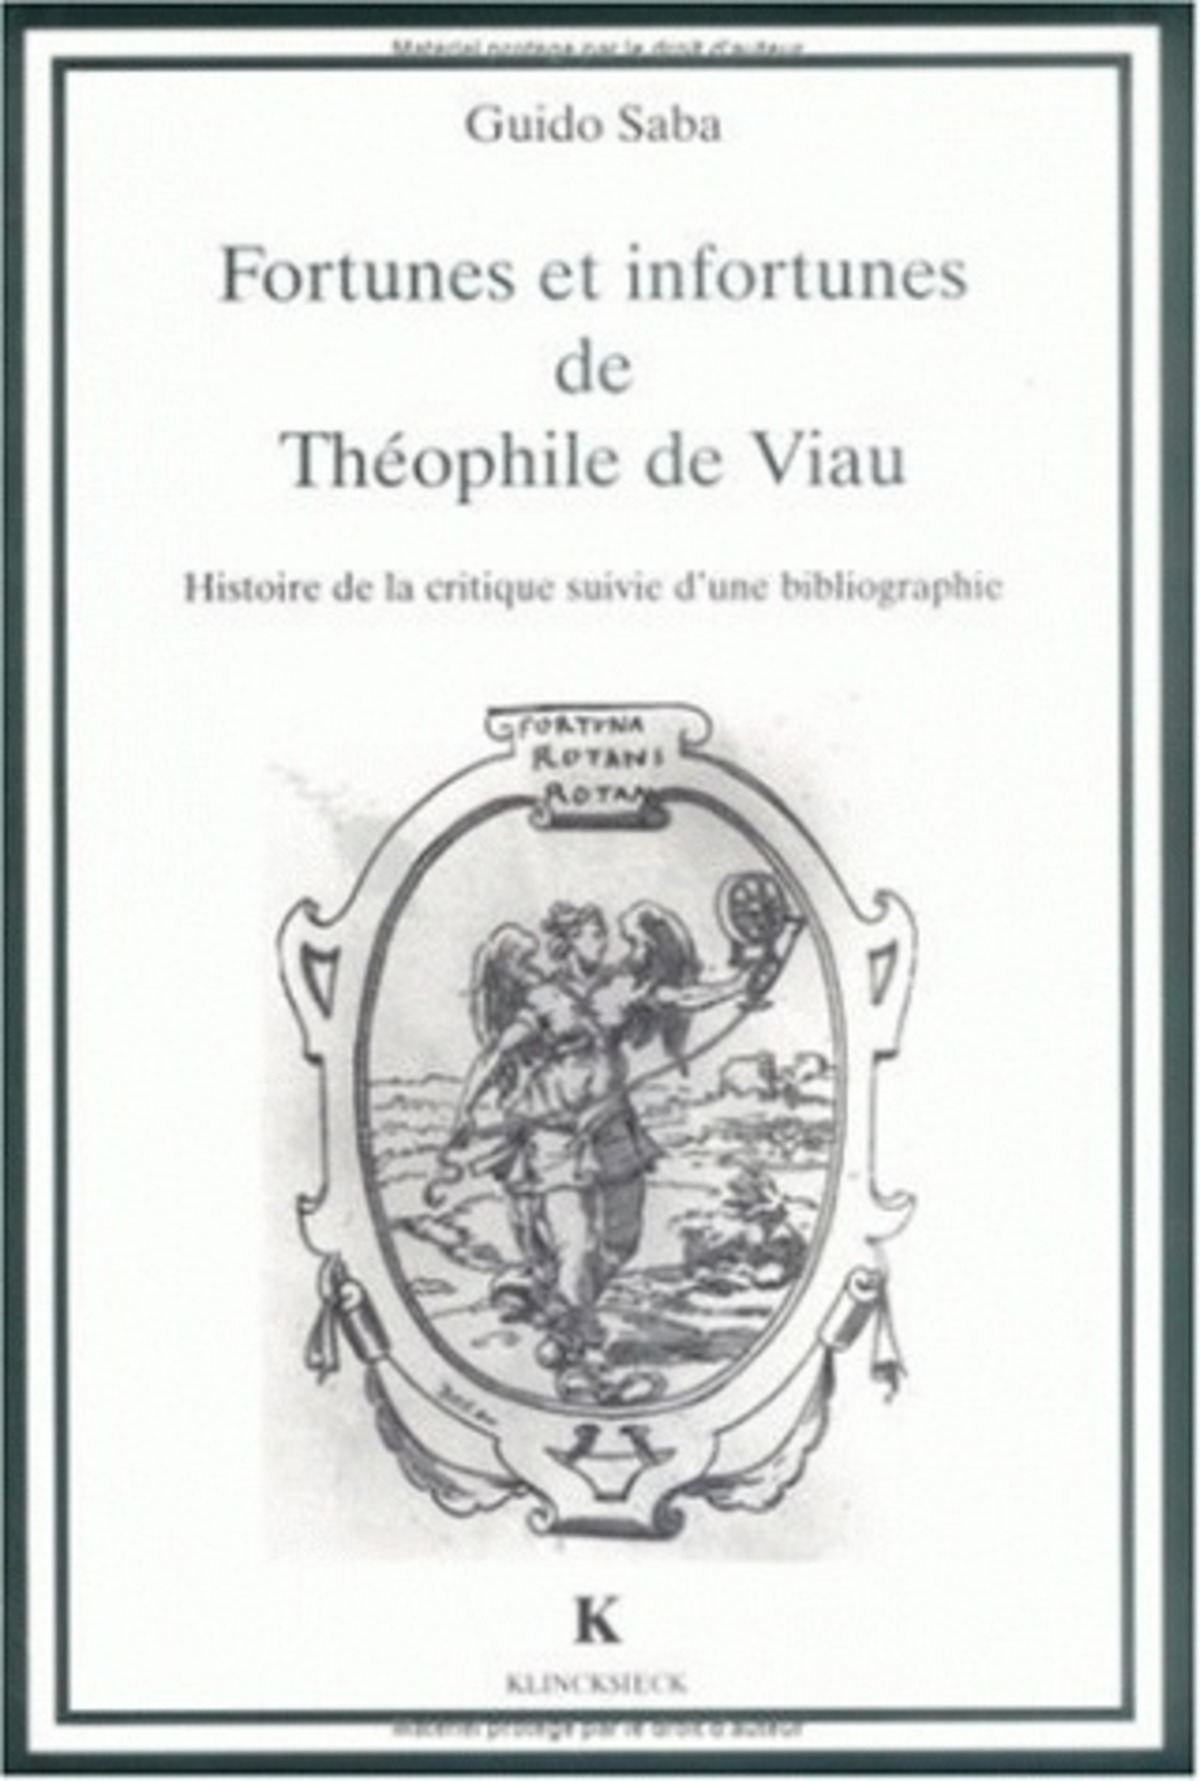 Fortunes et infortunes de Théophile de Viau